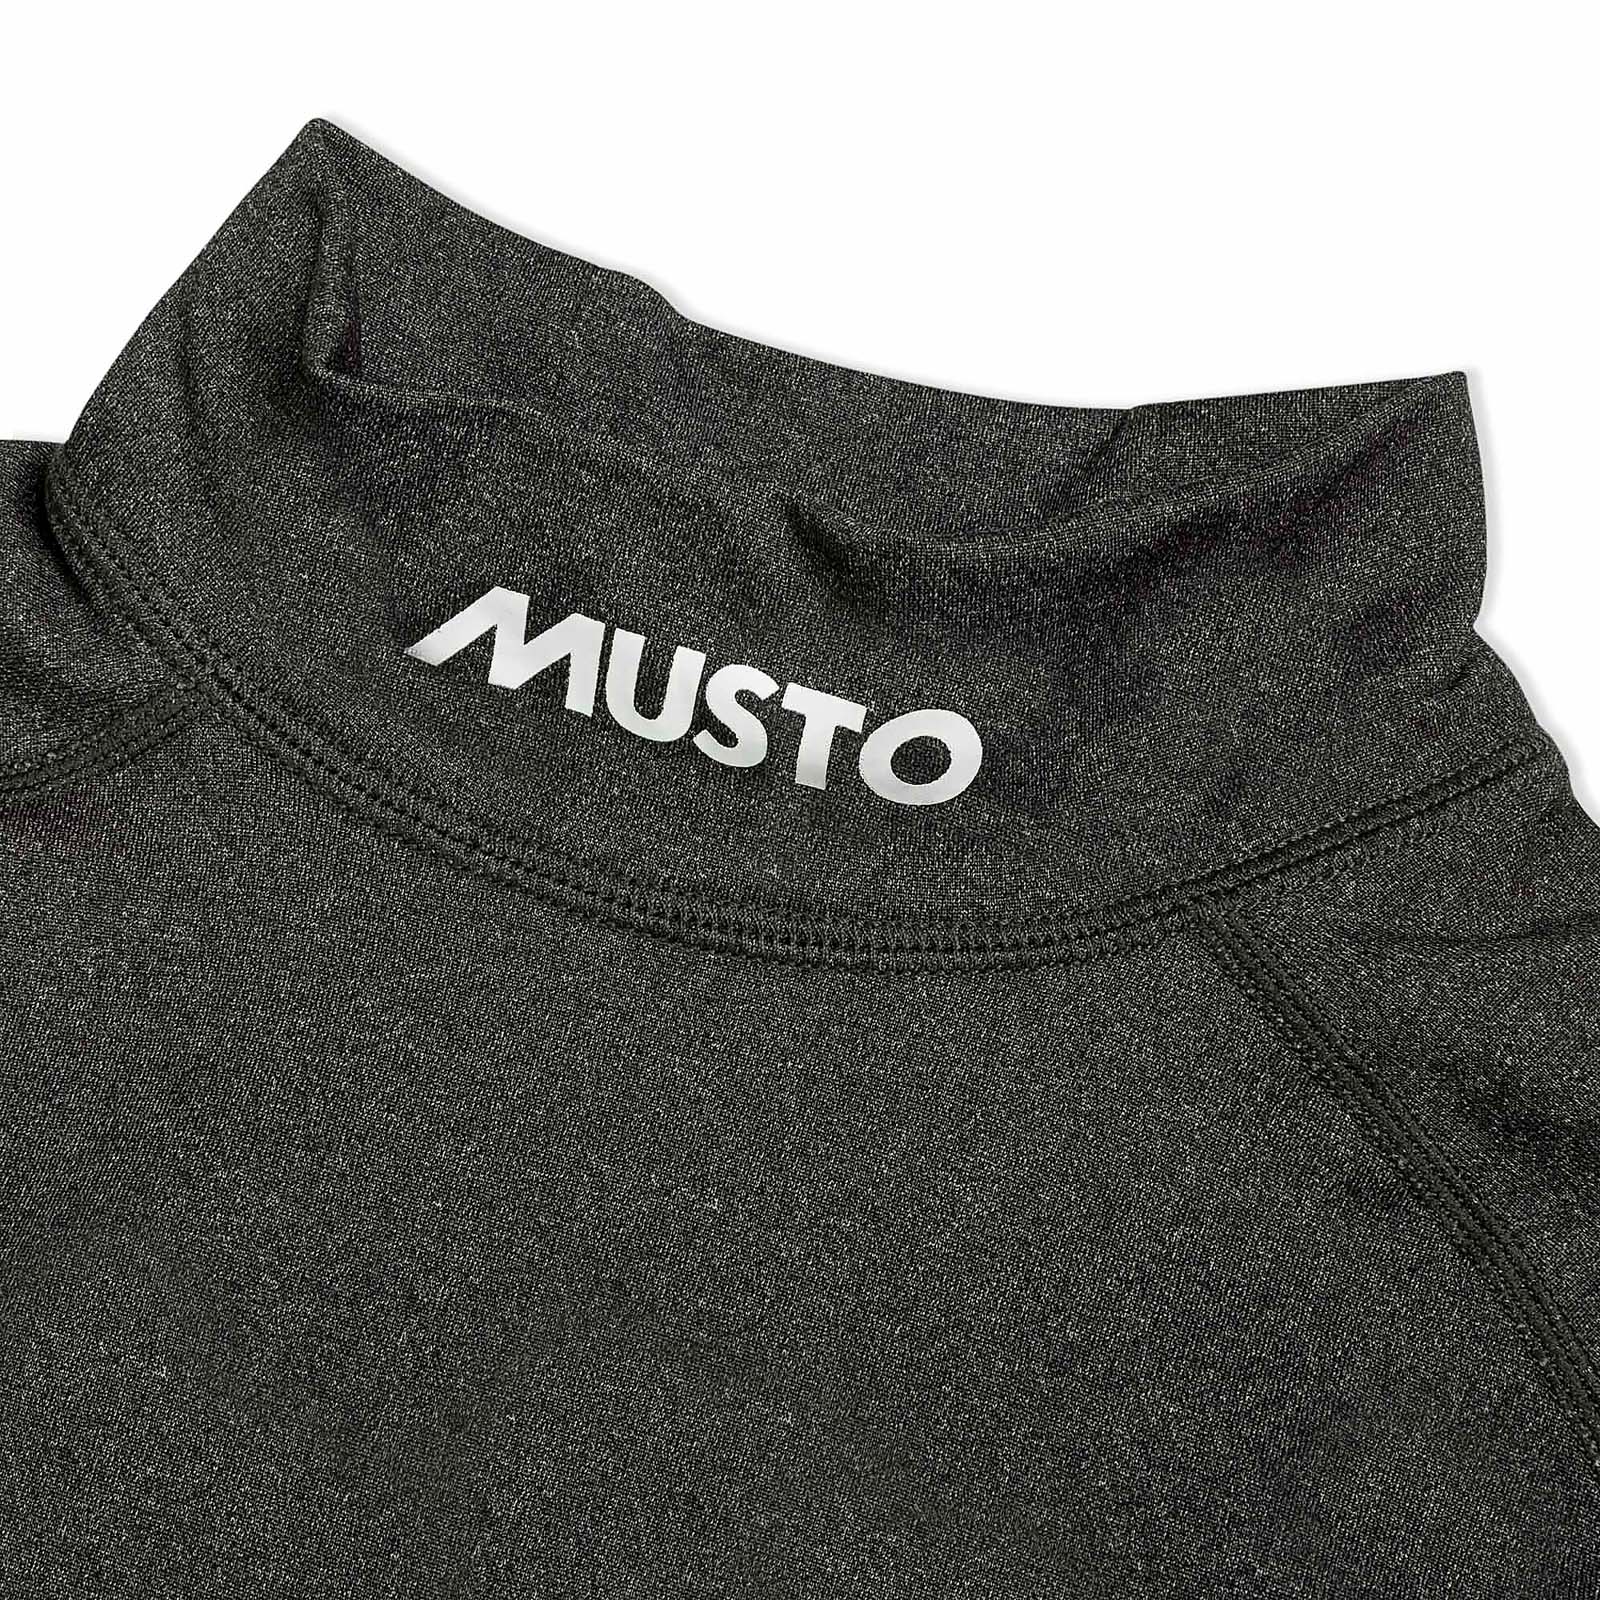 Musto Thermal Base Layer Shirt